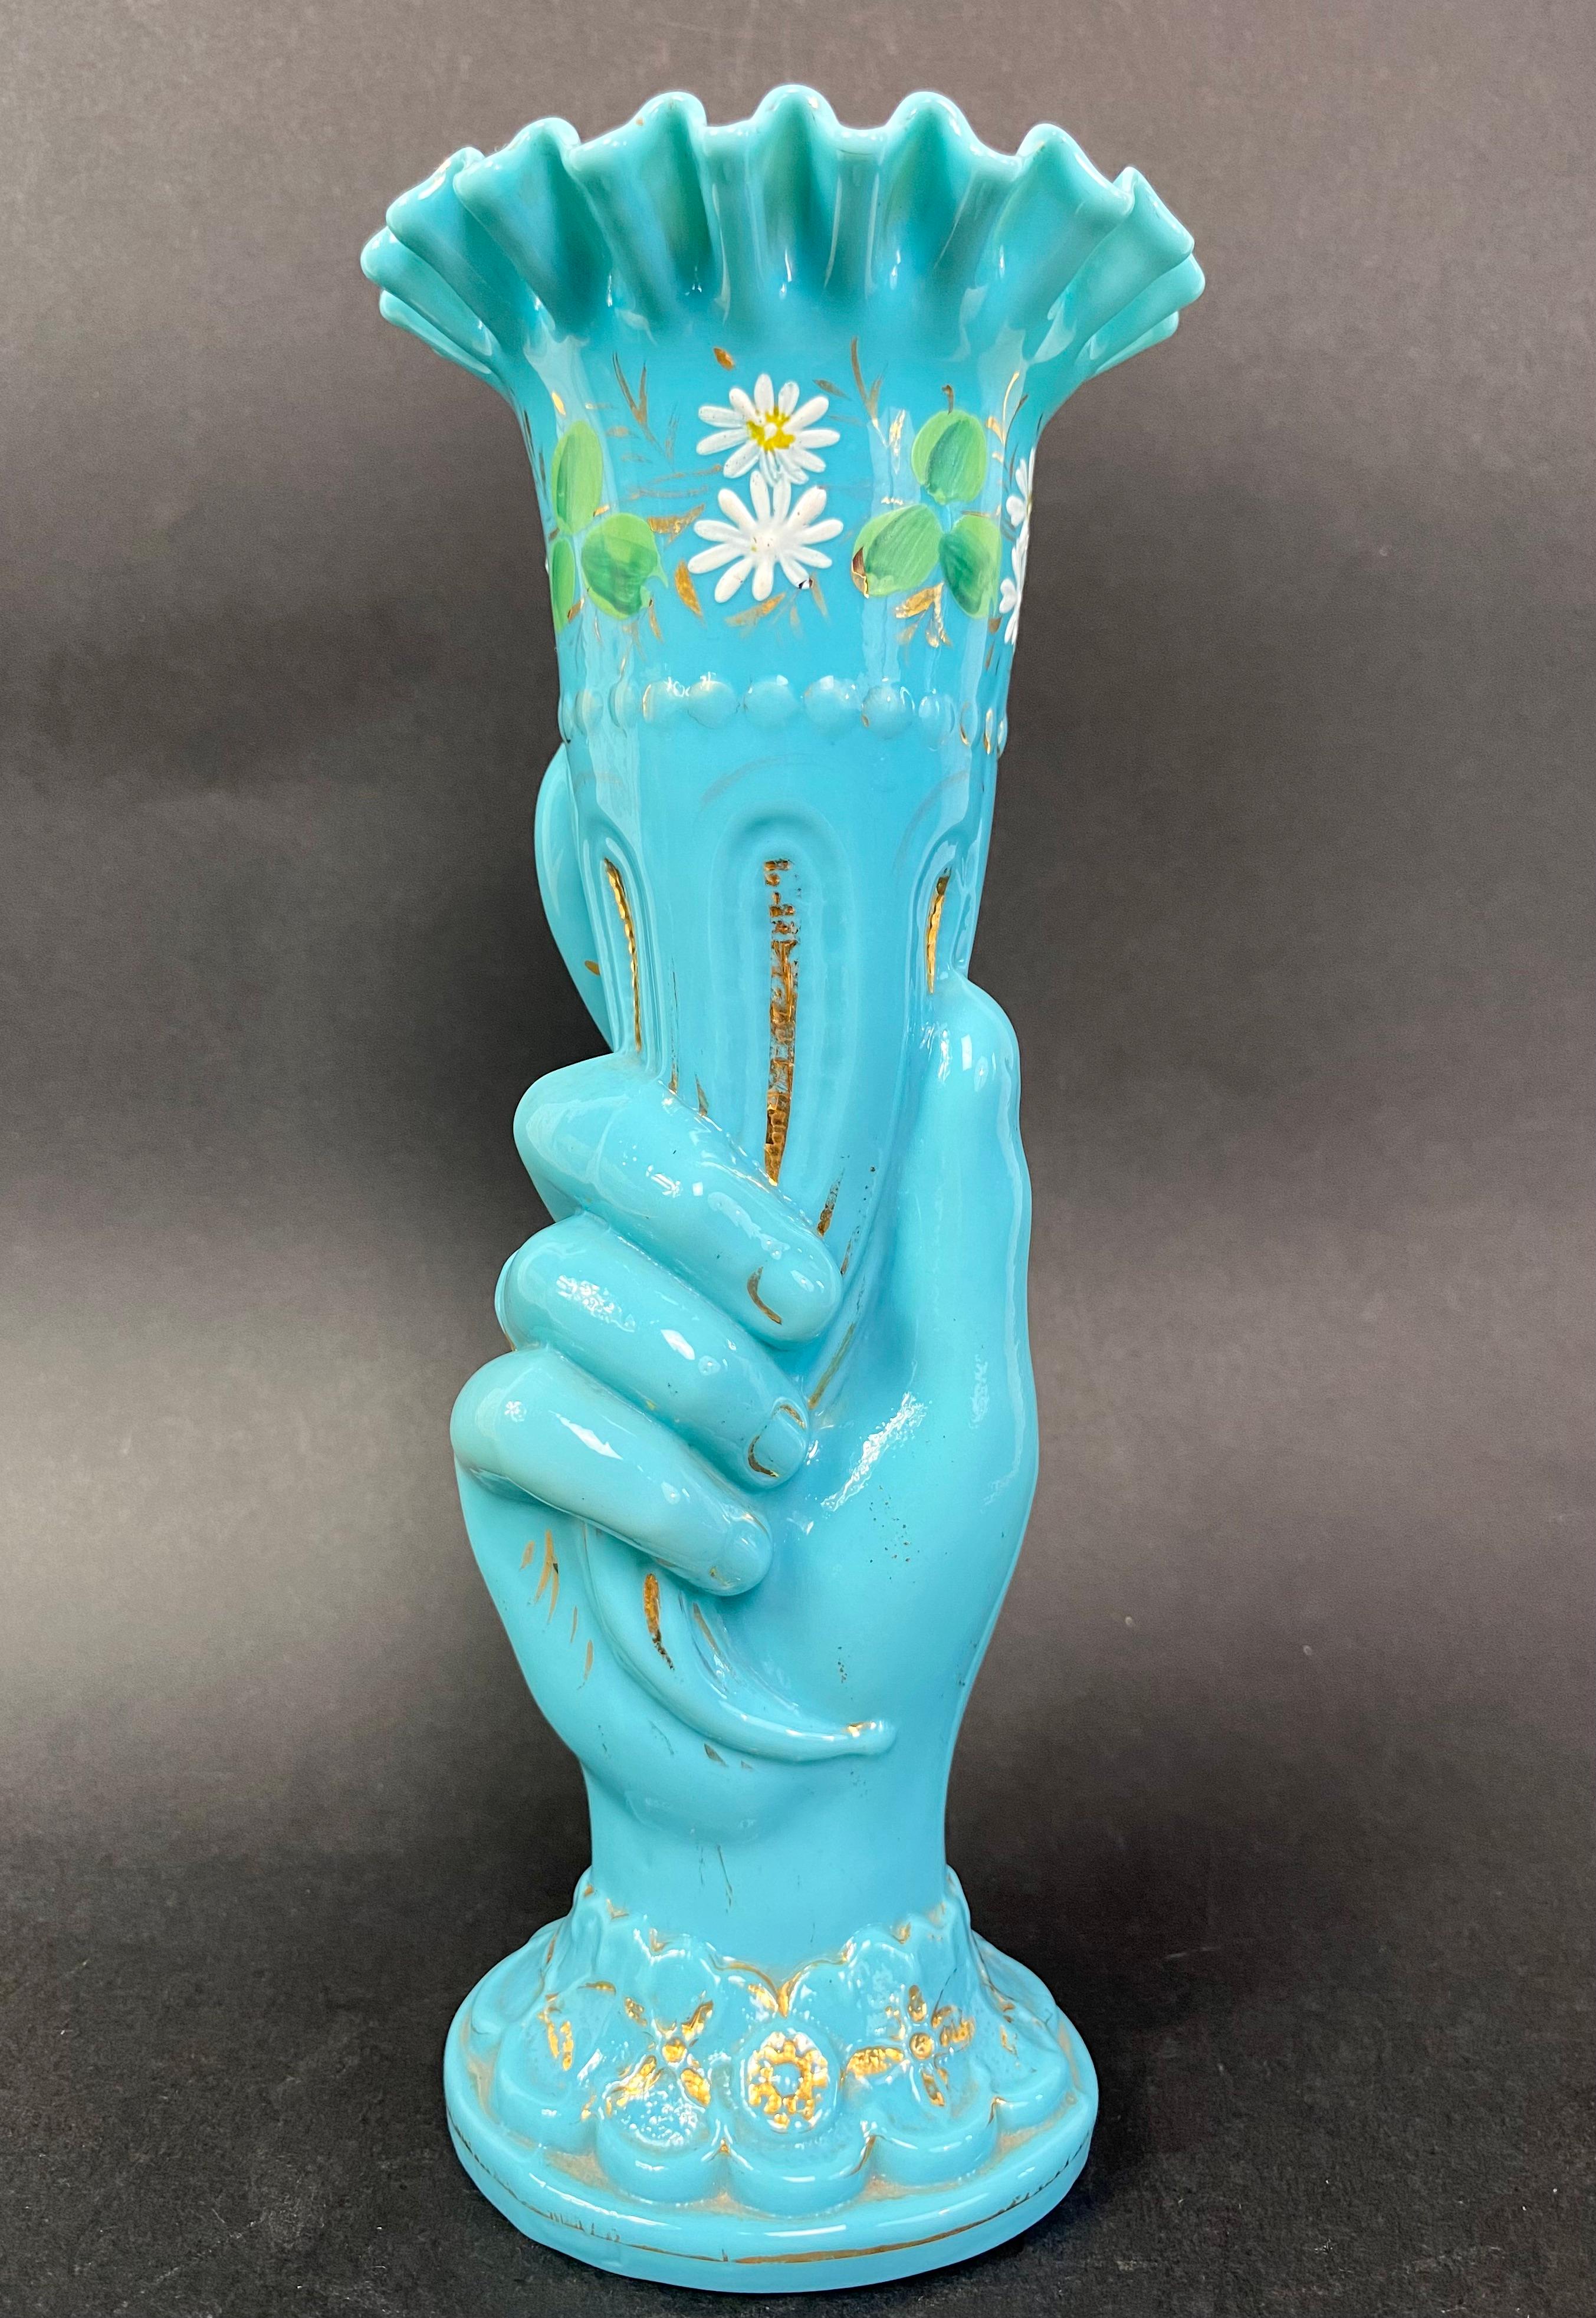 Geblasene blaue Opalvase aus der Kristallfabrik Portieux Vallerysthal, die eine Hand mit einem Füllhorn darstellt und etwa aus den 1920er Jahren stammt
Vase 